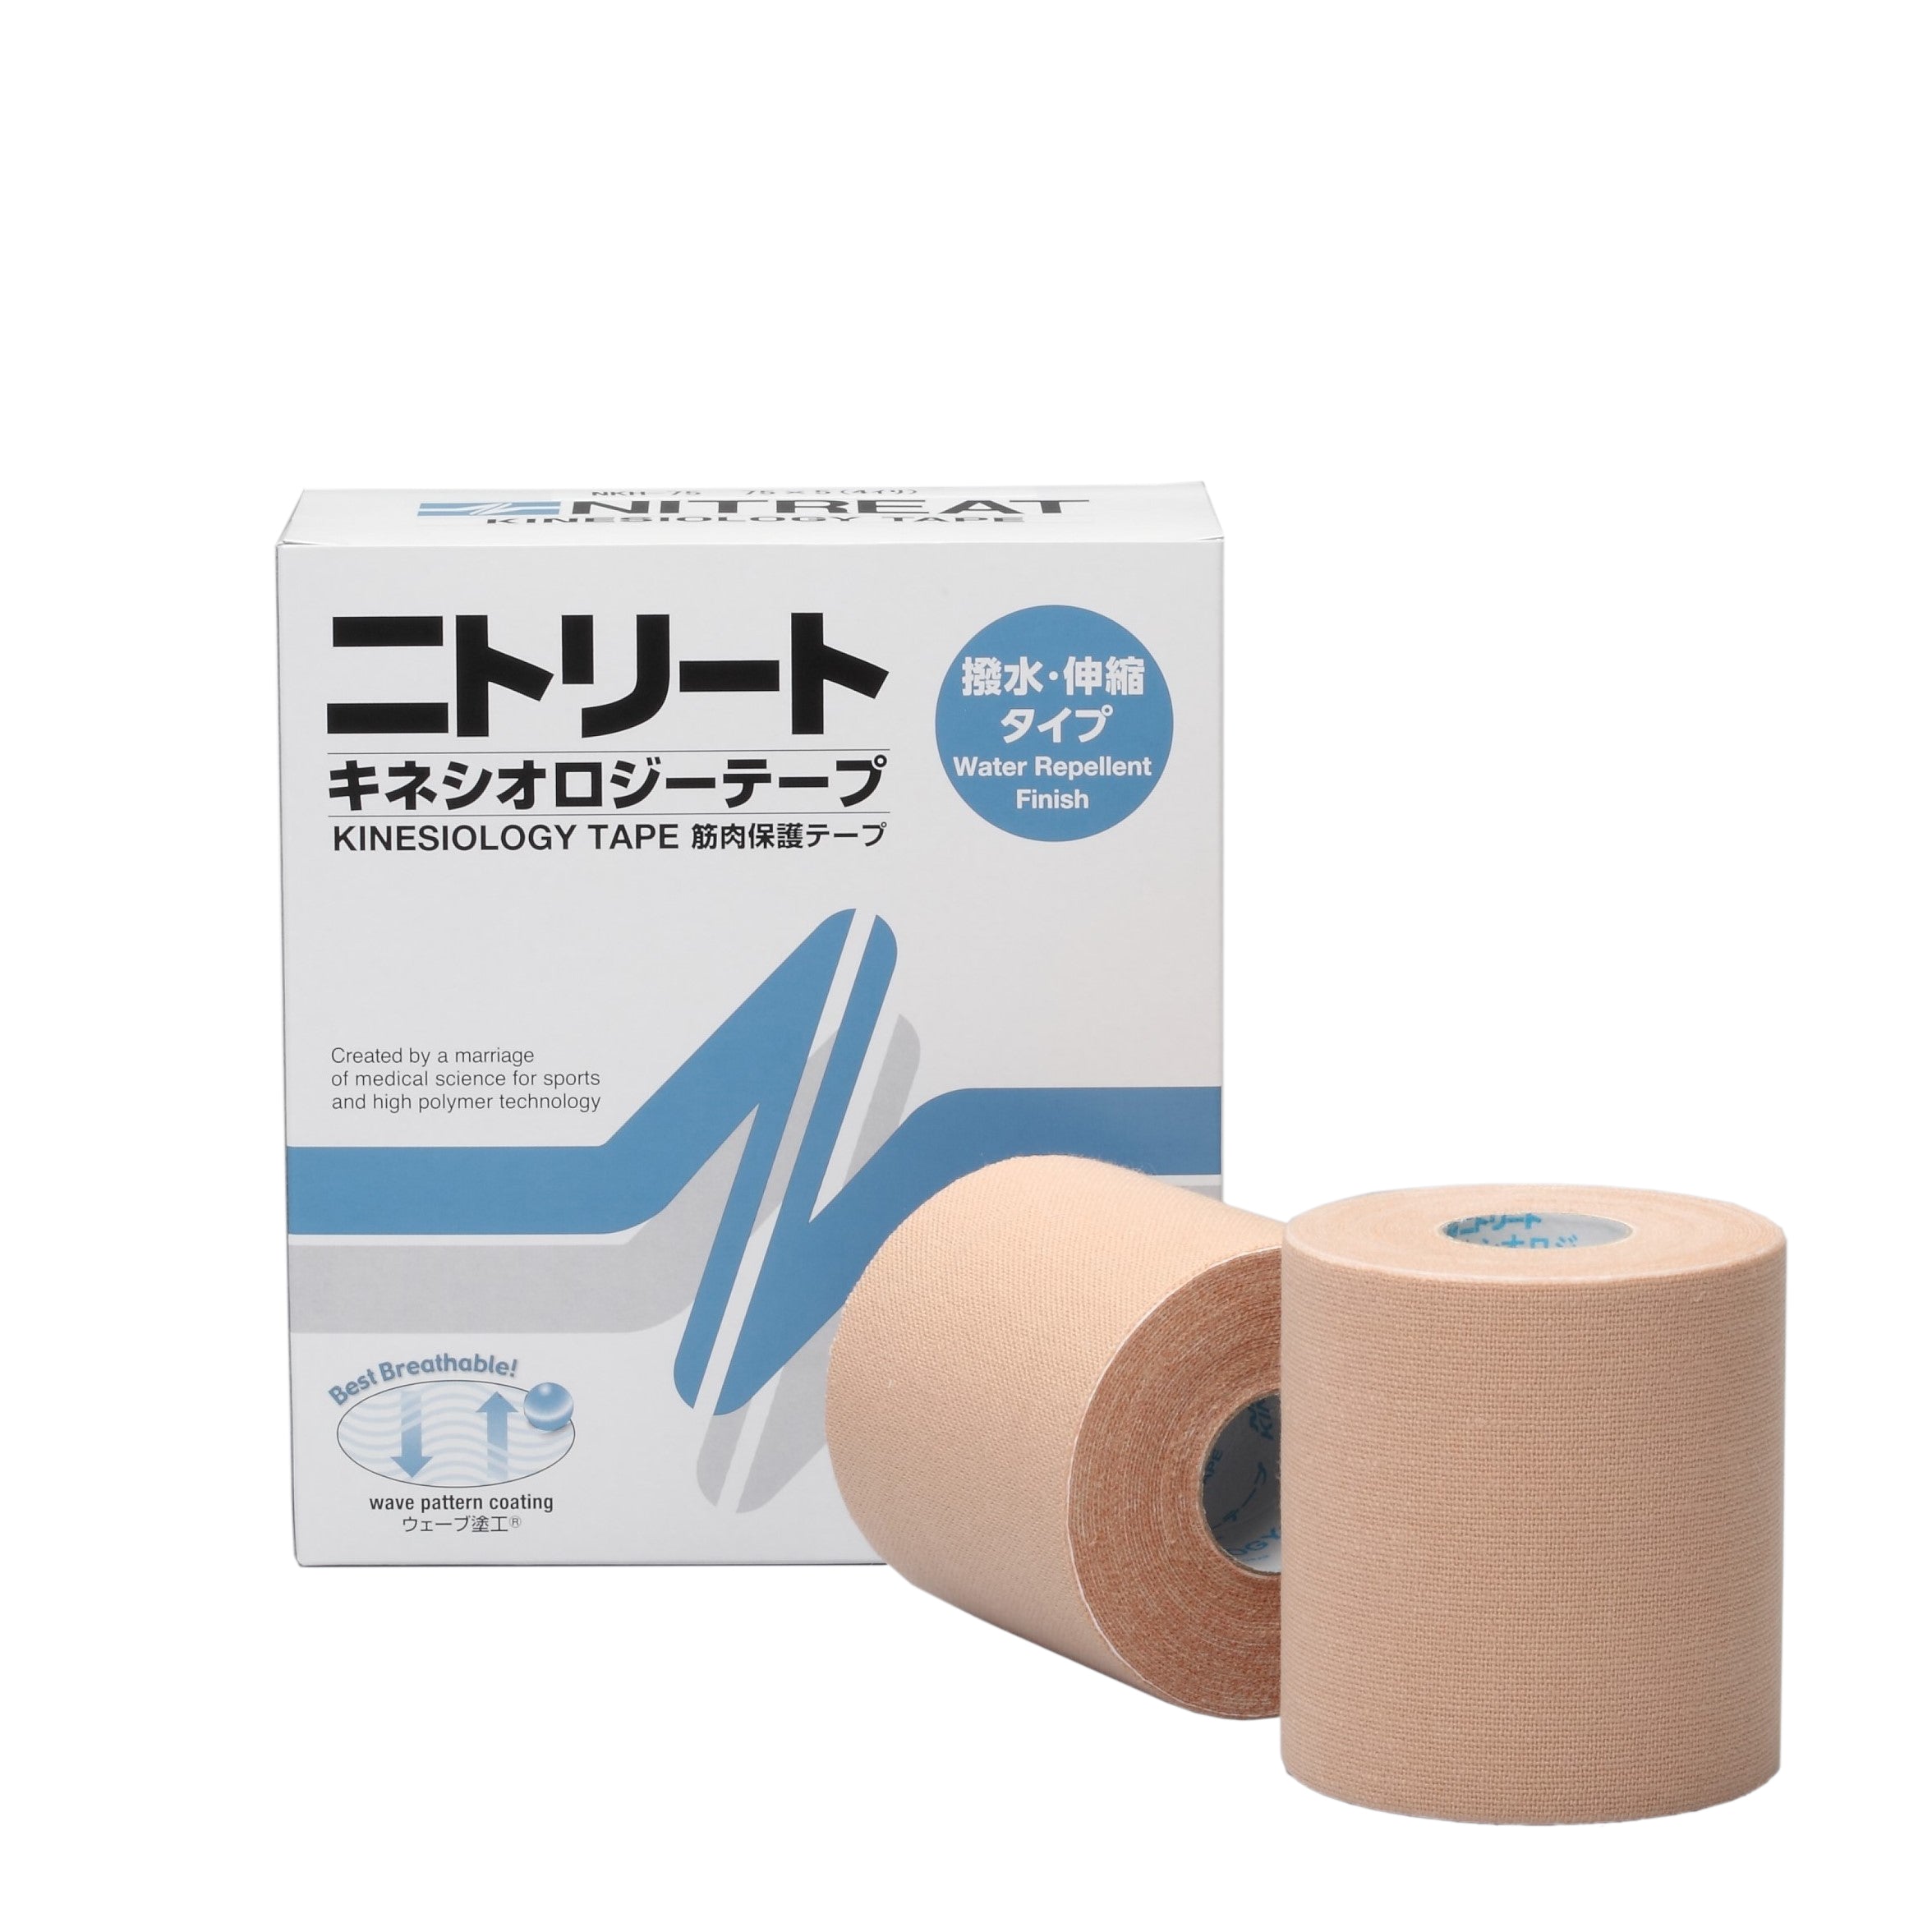 人気上昇中 新品未使用 キネシオロジーテープ 伸縮性筋肉保護